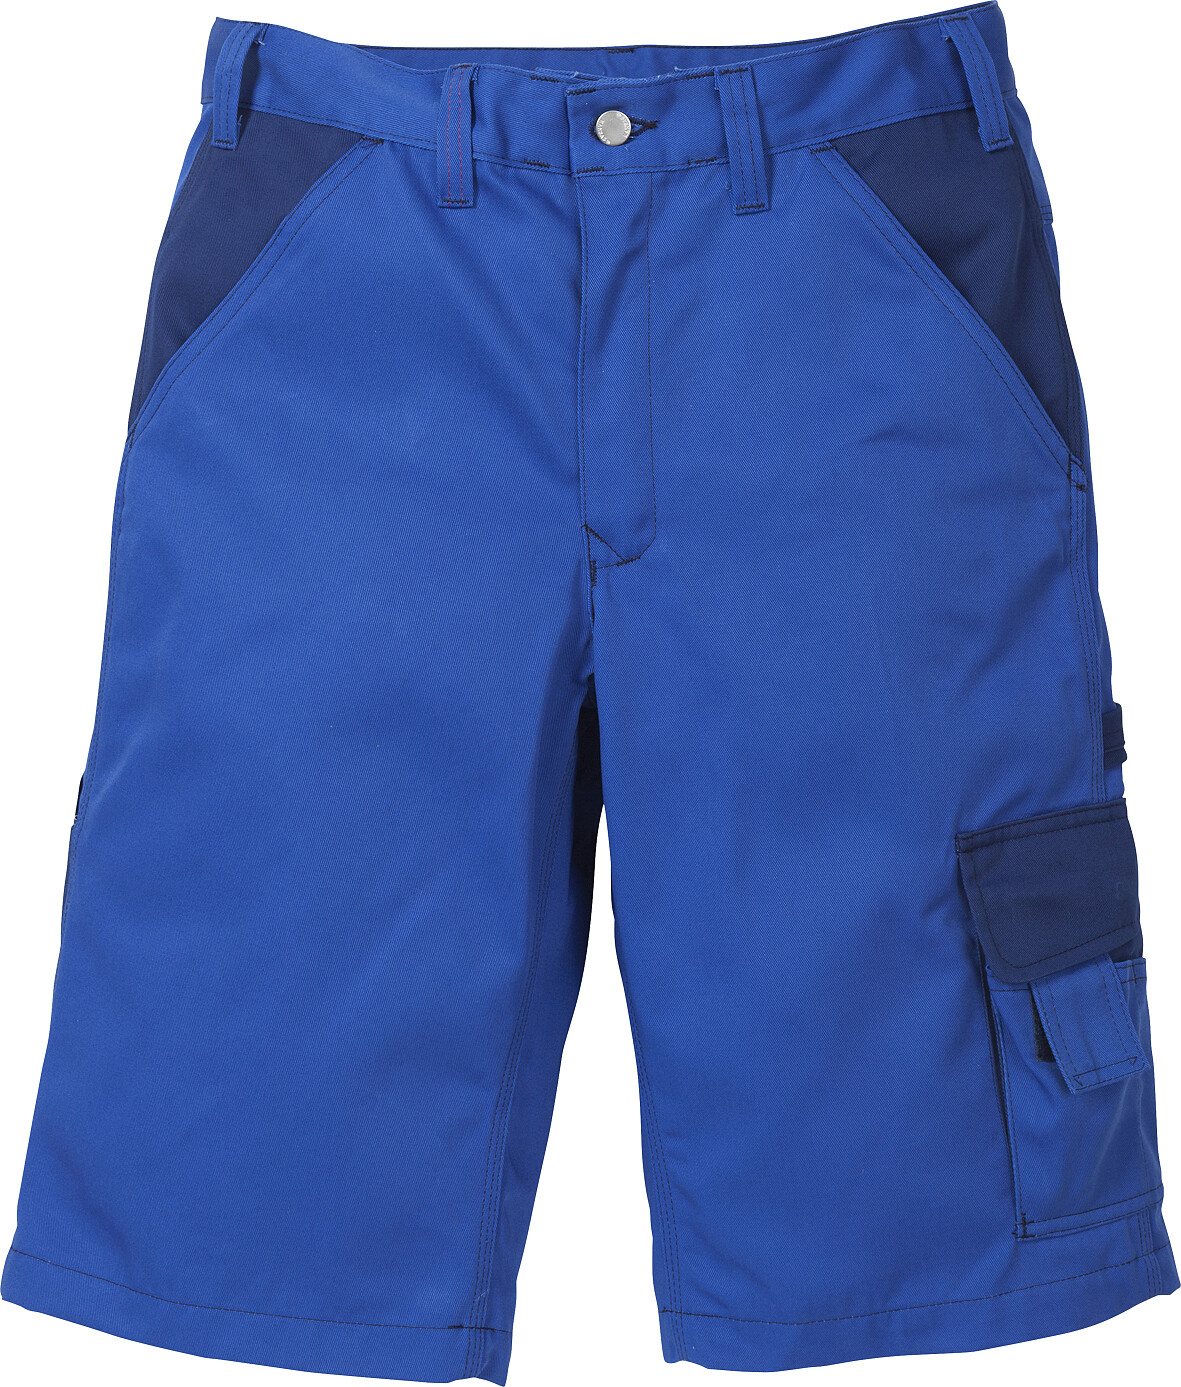 Icon Two Shorts 2020 LUXE, königsblau/marine, Gr. C42 